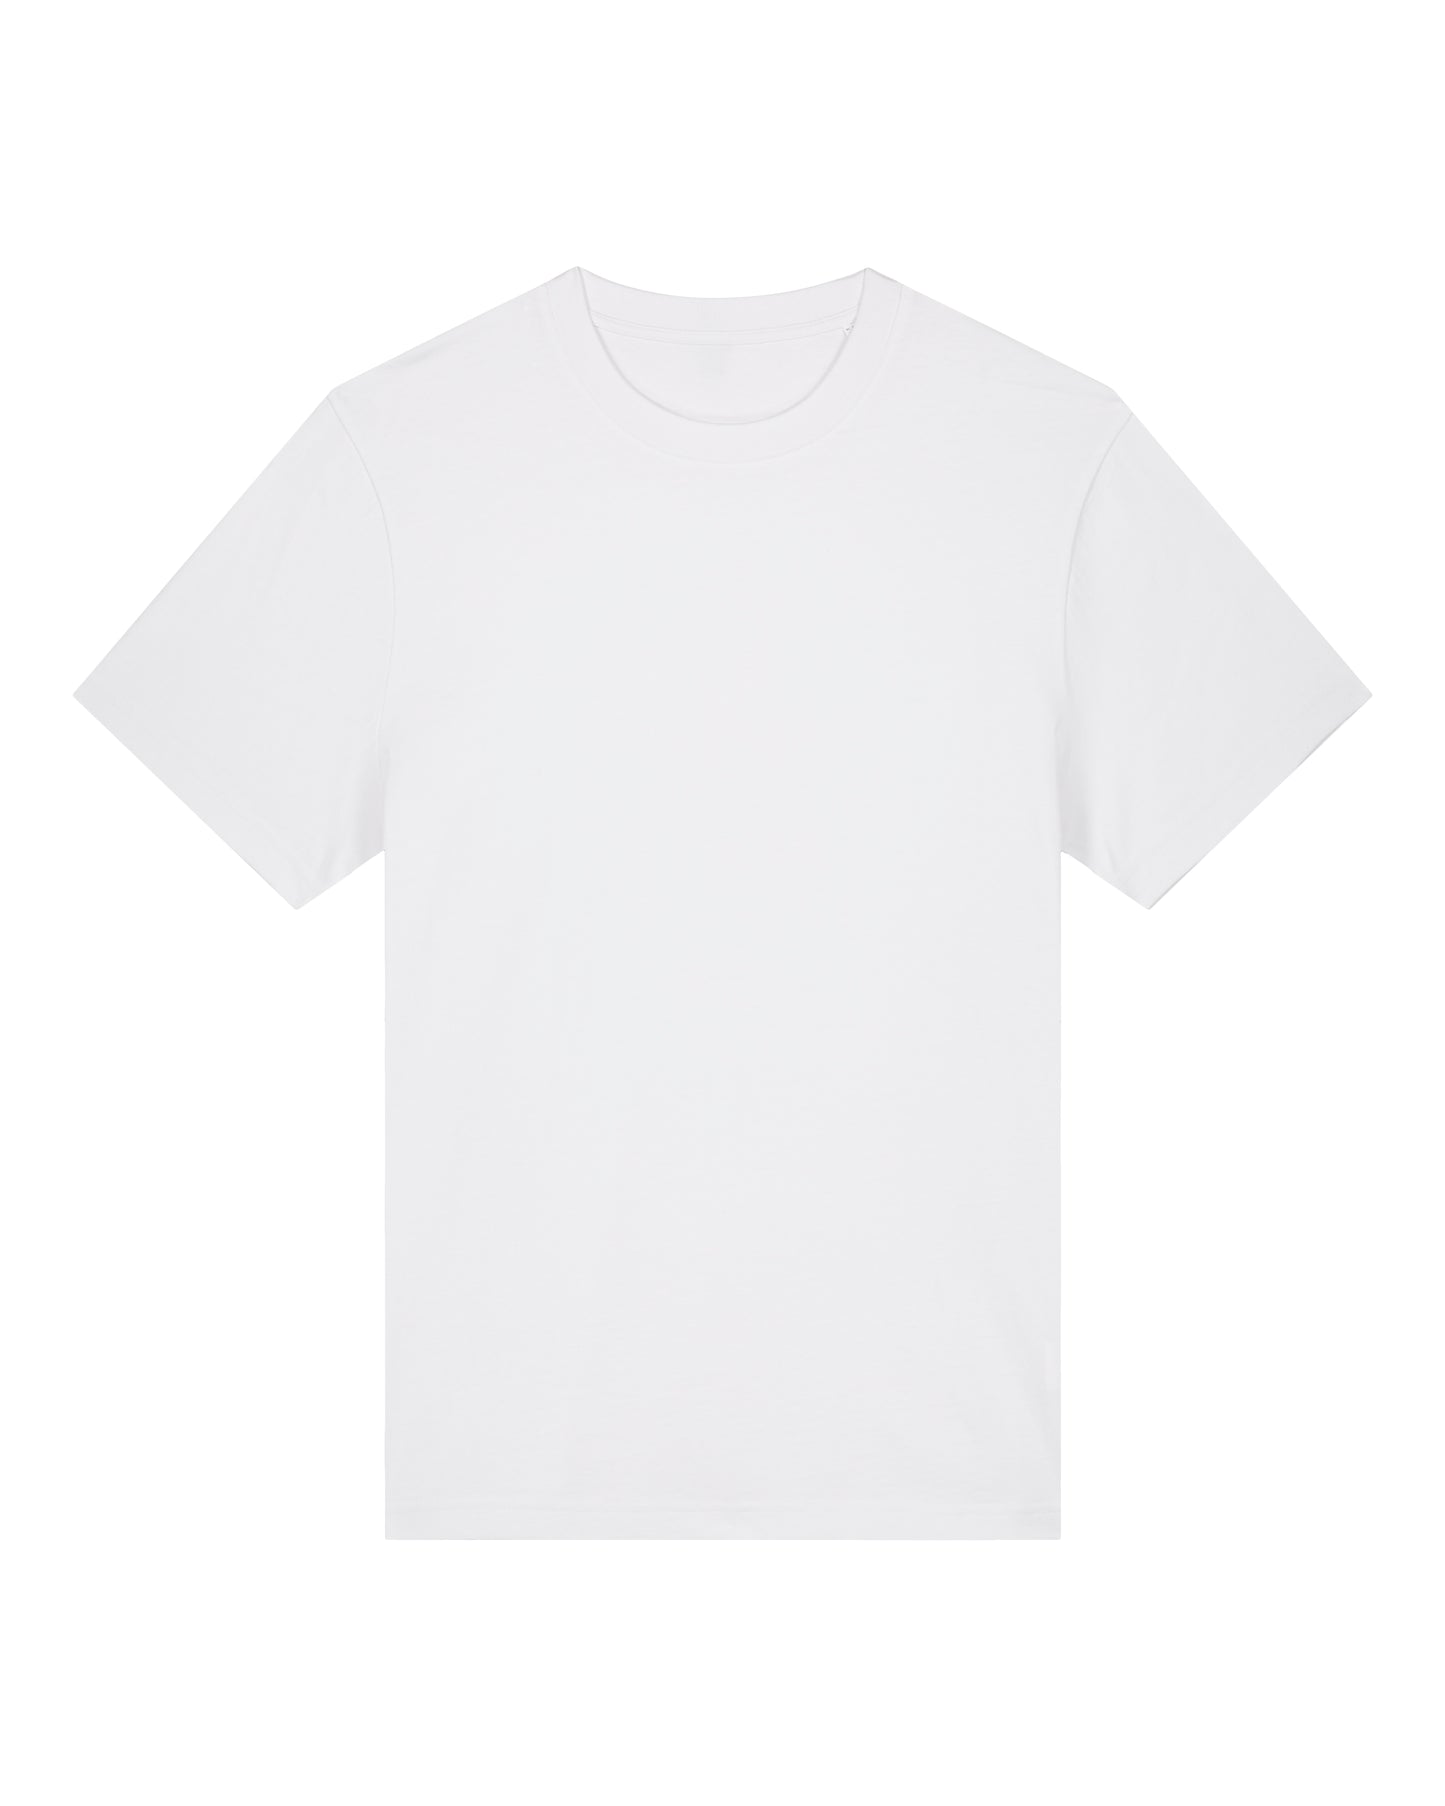 It Fits Swish - T-shirt unisexe coupe décontractée - Poids lourd - Blanc